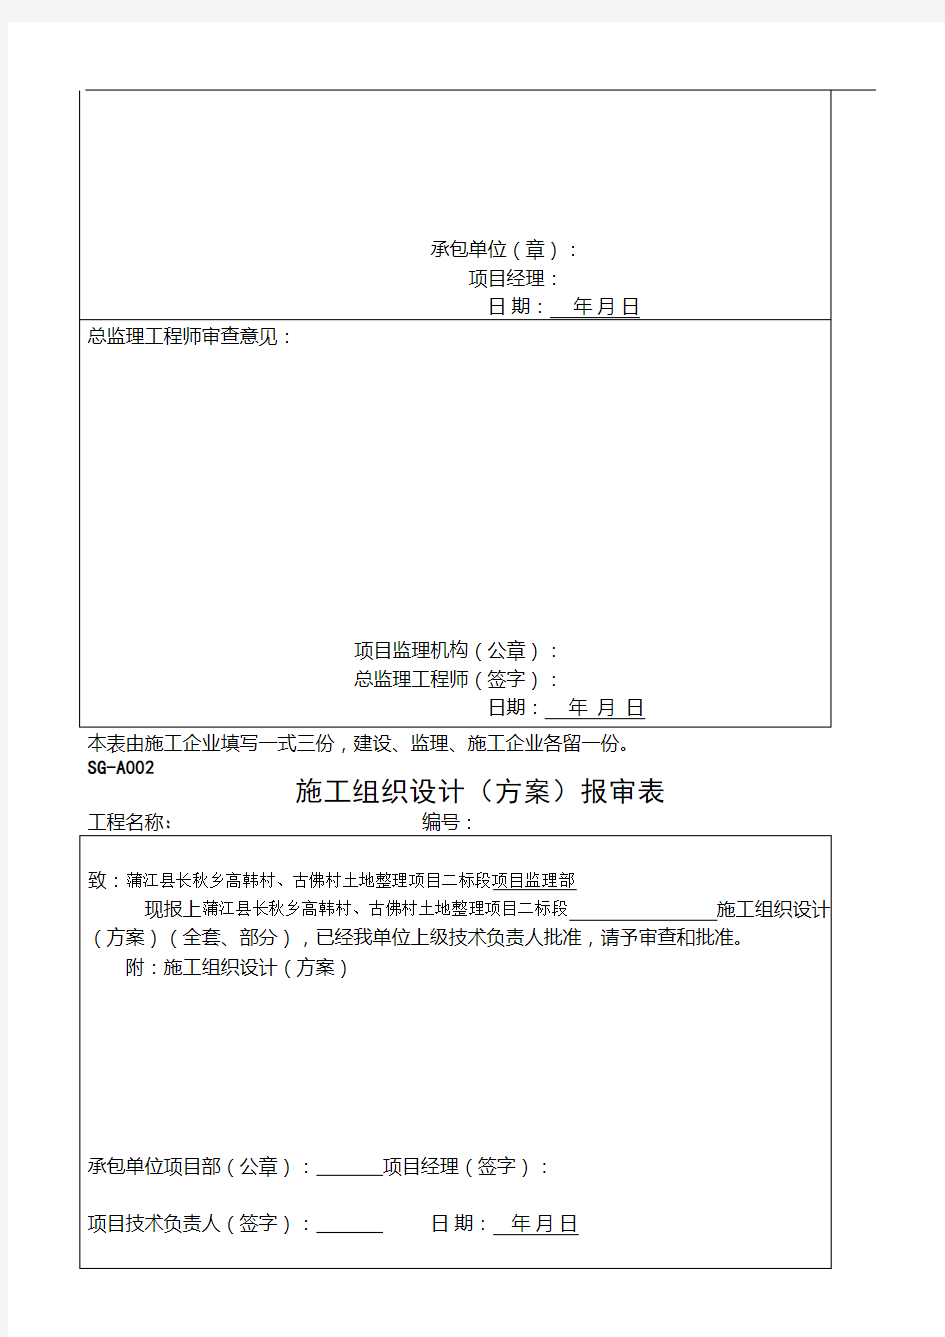 土地整理工程资料全套表格(2)